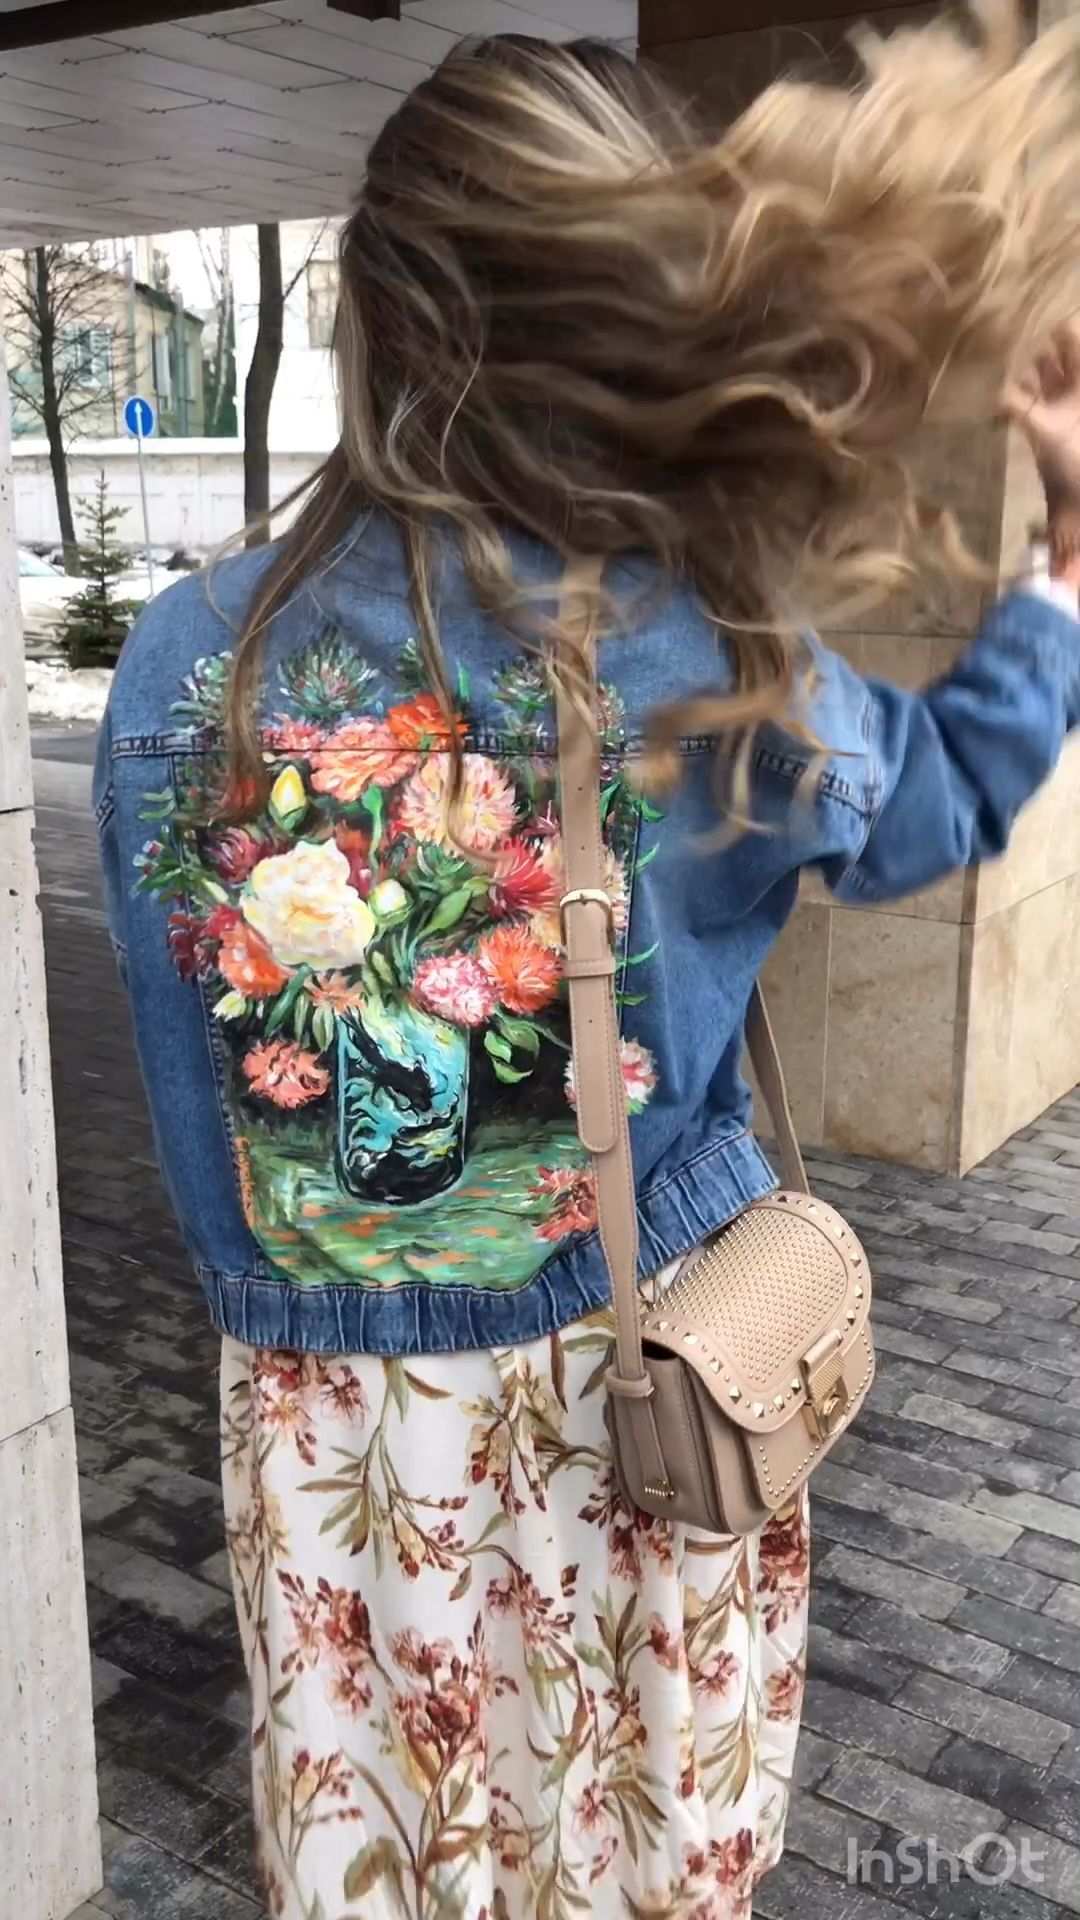 Painted custom jacket Van Gogh vase of carnations price for | Etsy - Painted custom jacket Van Gogh vase of carnations price for | Etsy -   18 diy Fashion art ideas